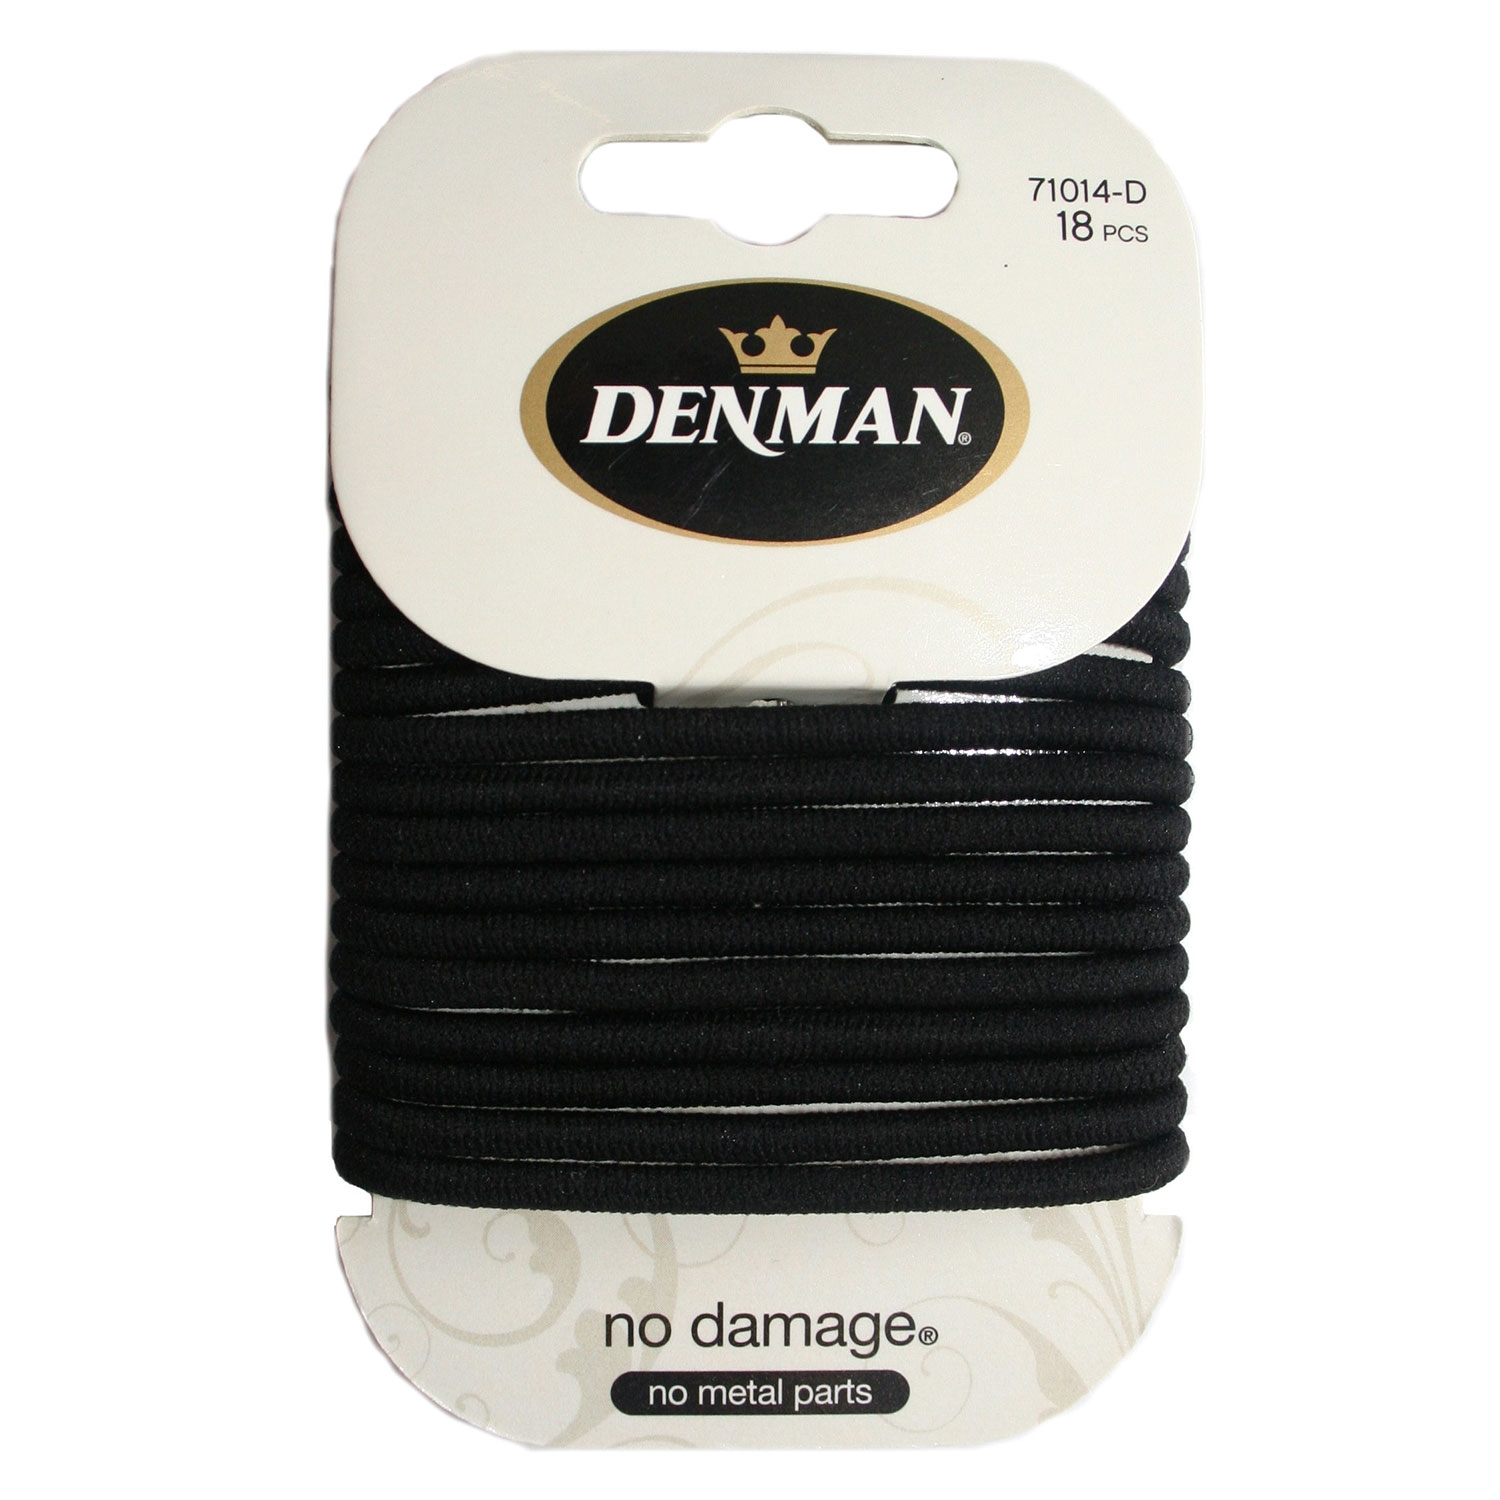 Produktbild von Denman - No Damage Elastics Black